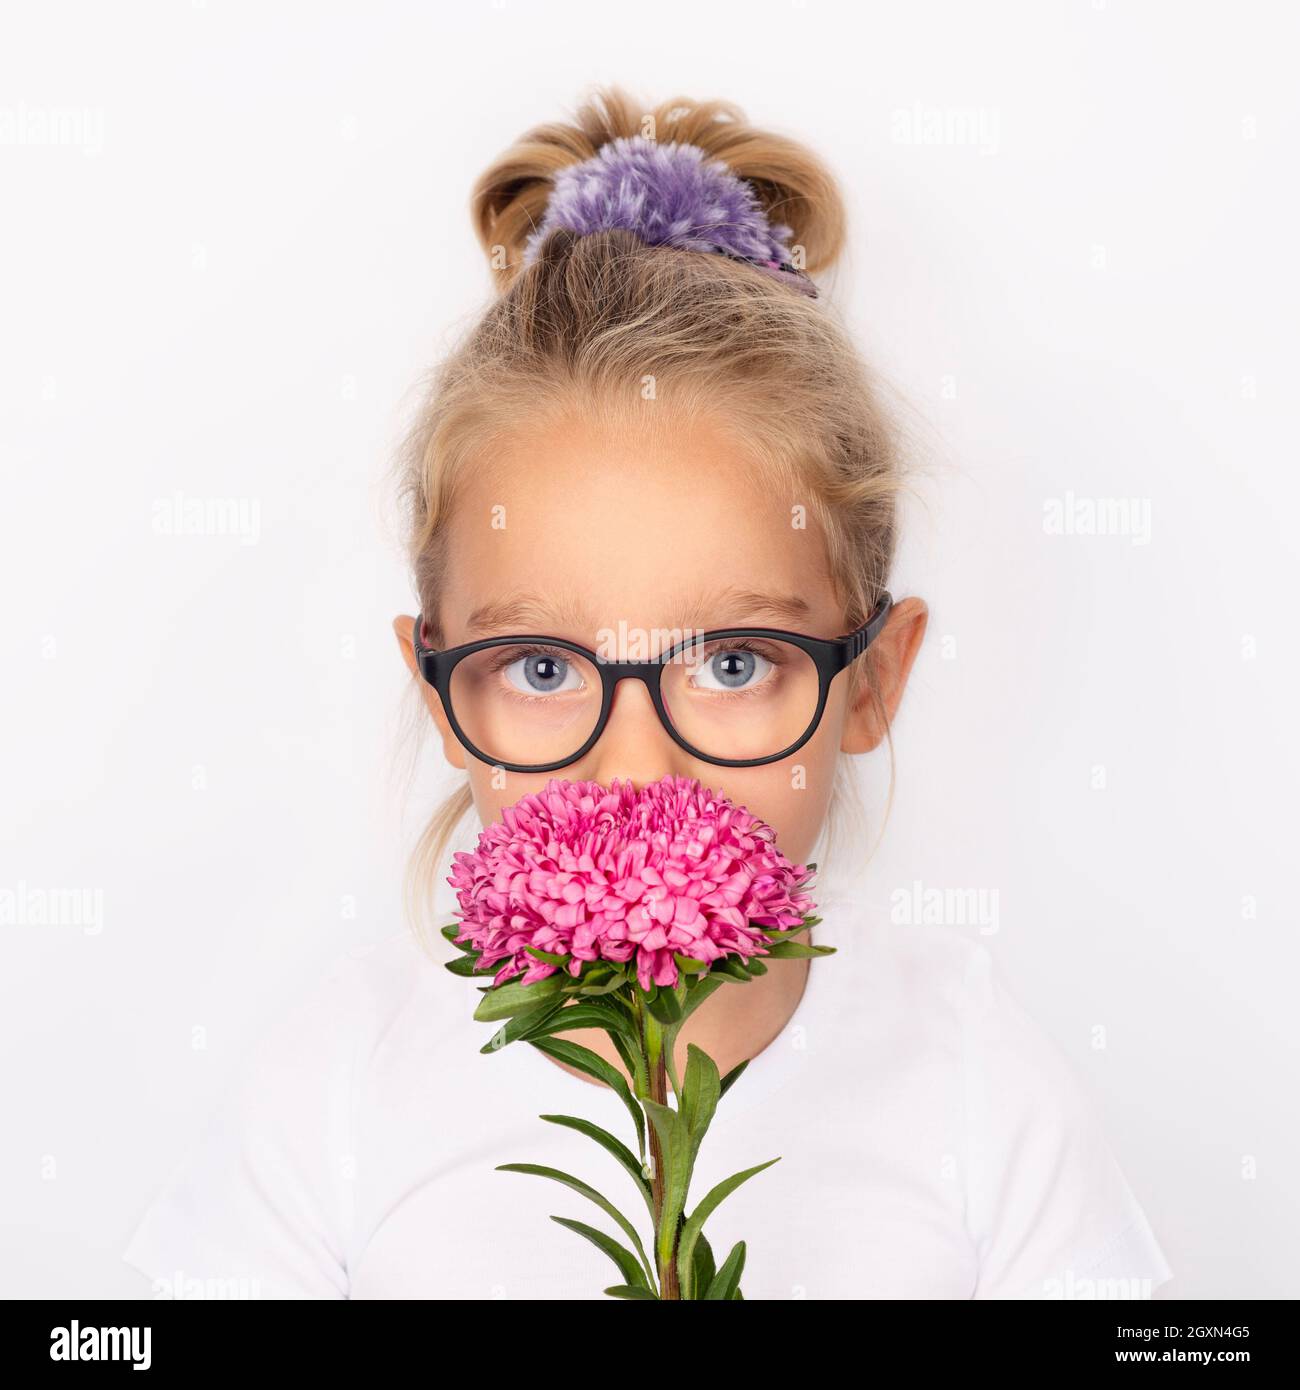 Enfant fille tenant une fleur d'aster rose isolée sur fond blanc. Concept international de la fête des mères Banque D'Images